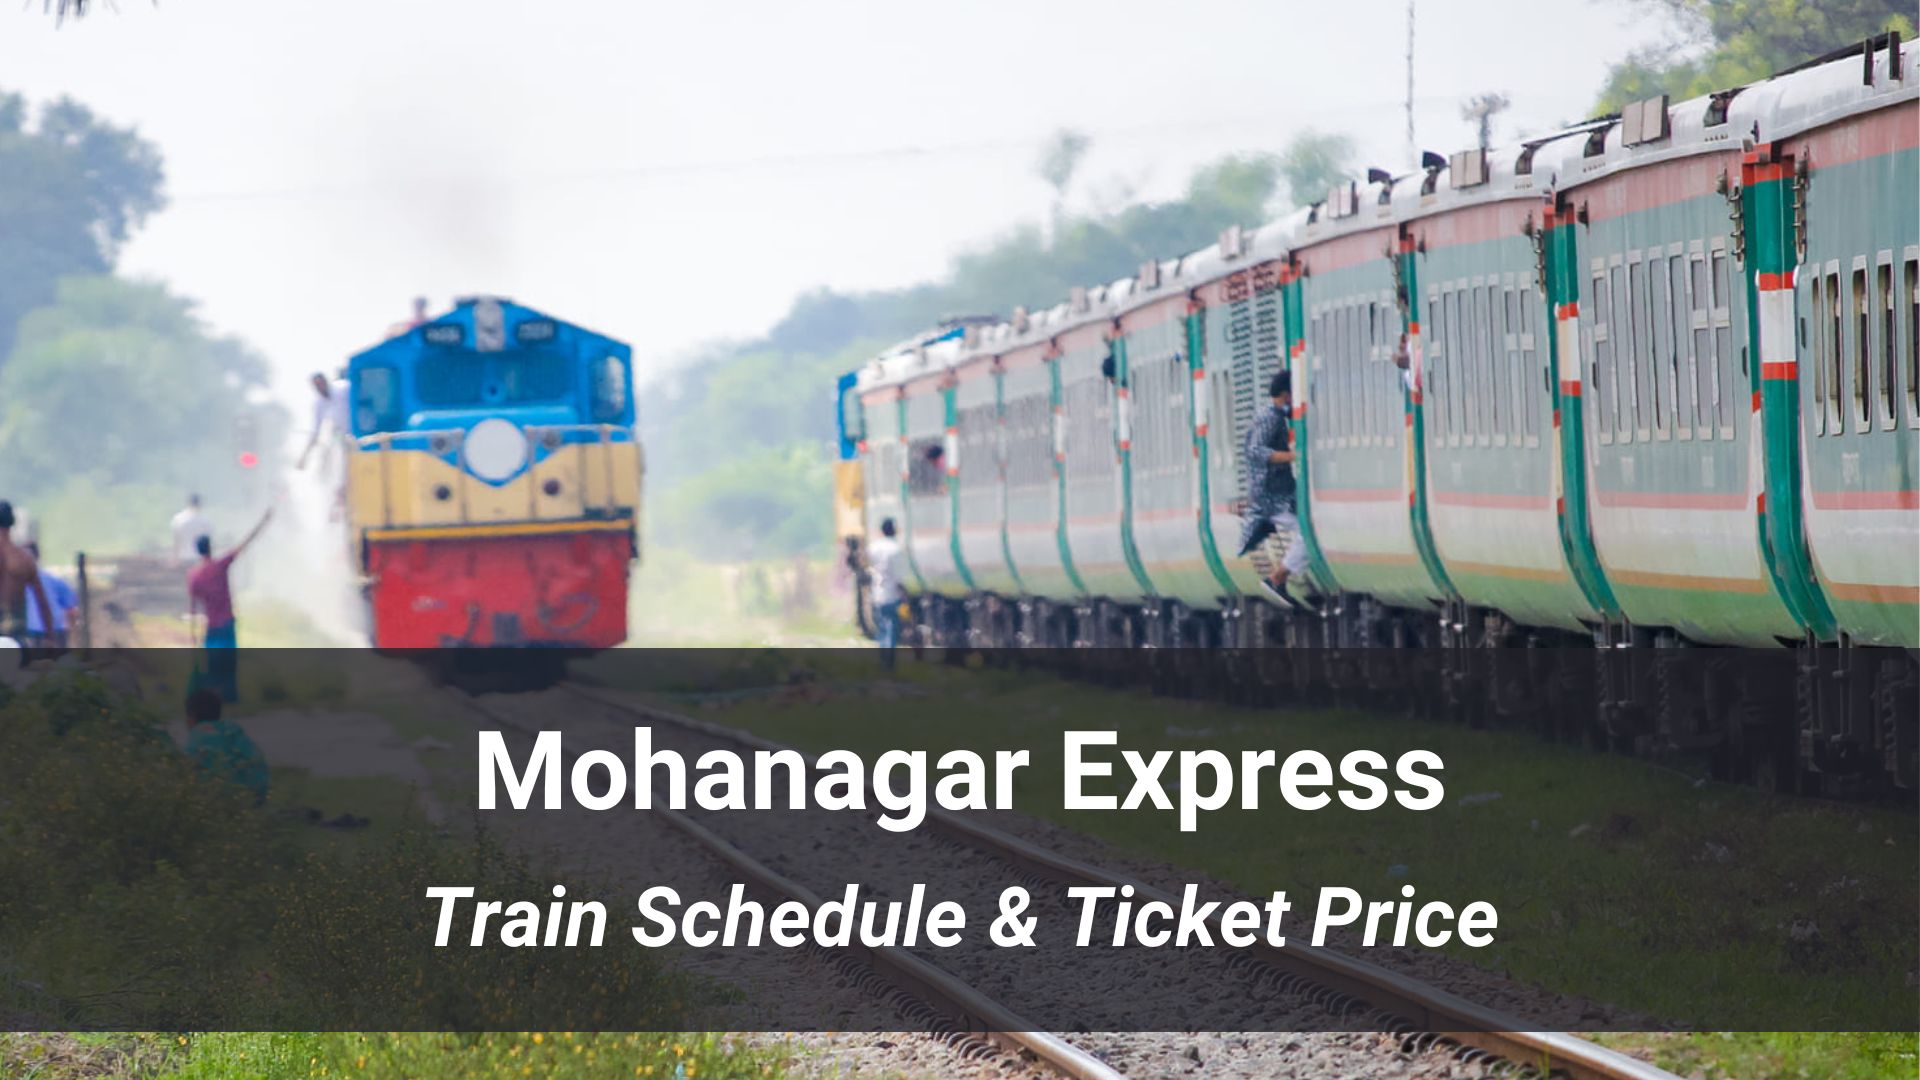 Mohanagar Express